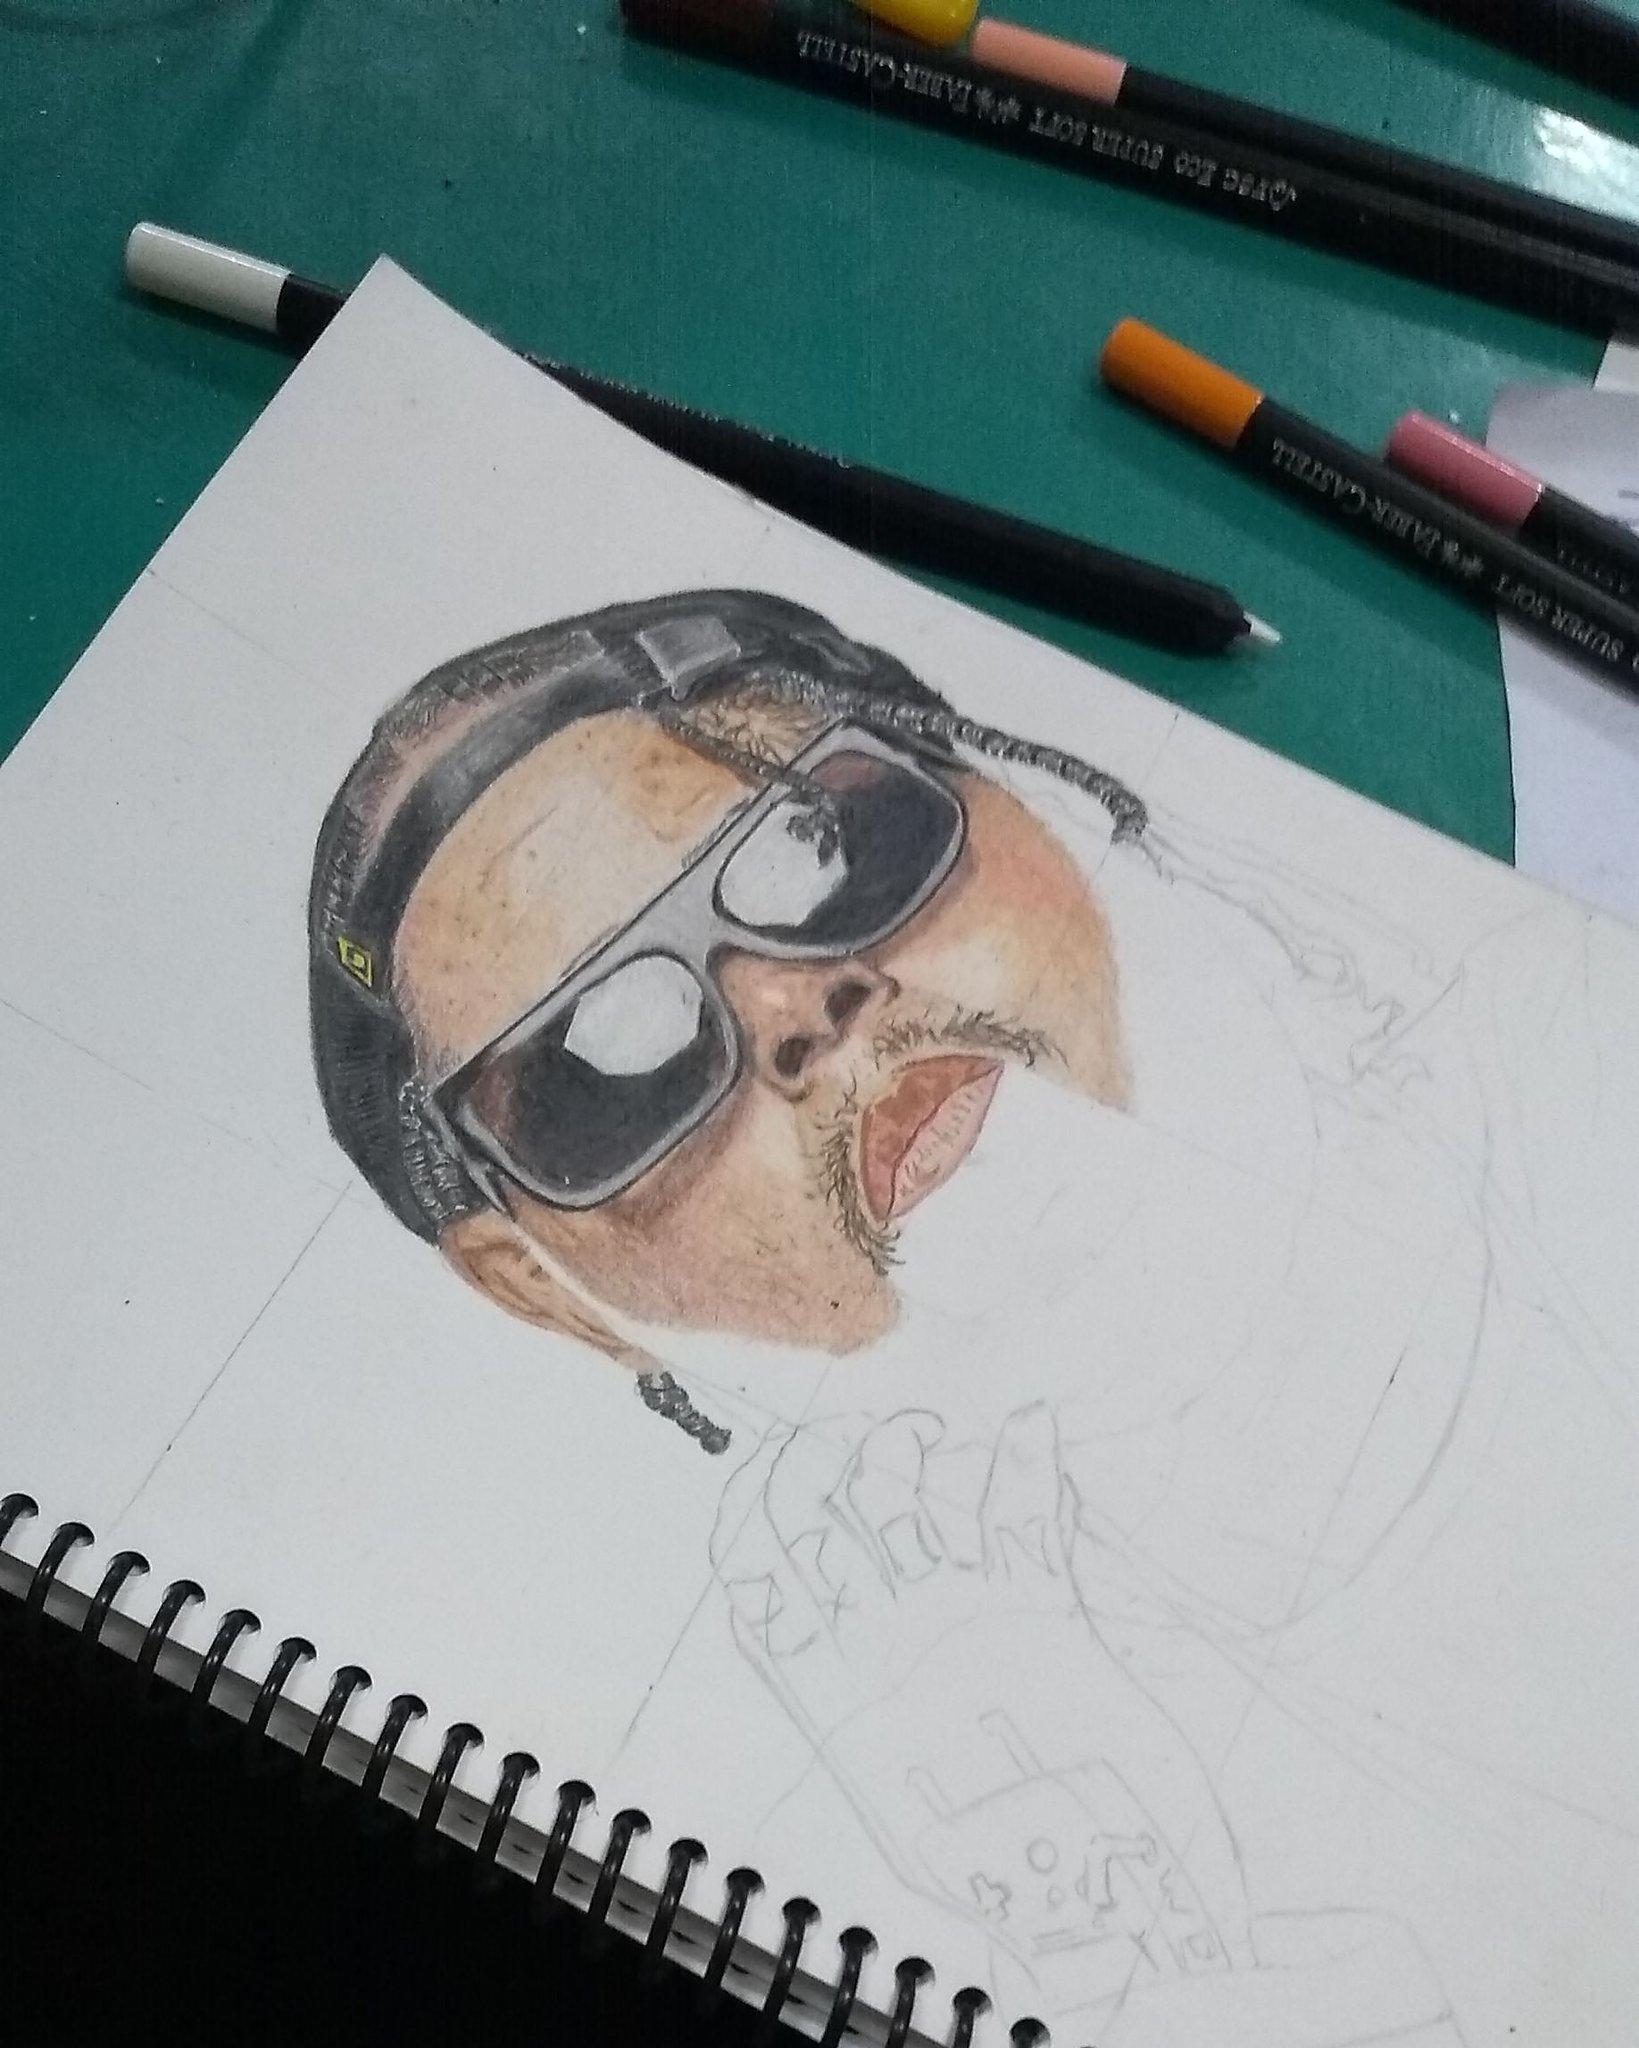 Rodrigo Rufino on X: Mais uma encomenda em andamento se inscrevam no  meu canal no : Rodrigo Drawings link no meu perfil #desenhos  #drawings #draw #pretonobranco #curte #comente #grau #motoboy #moto  #wheeling #